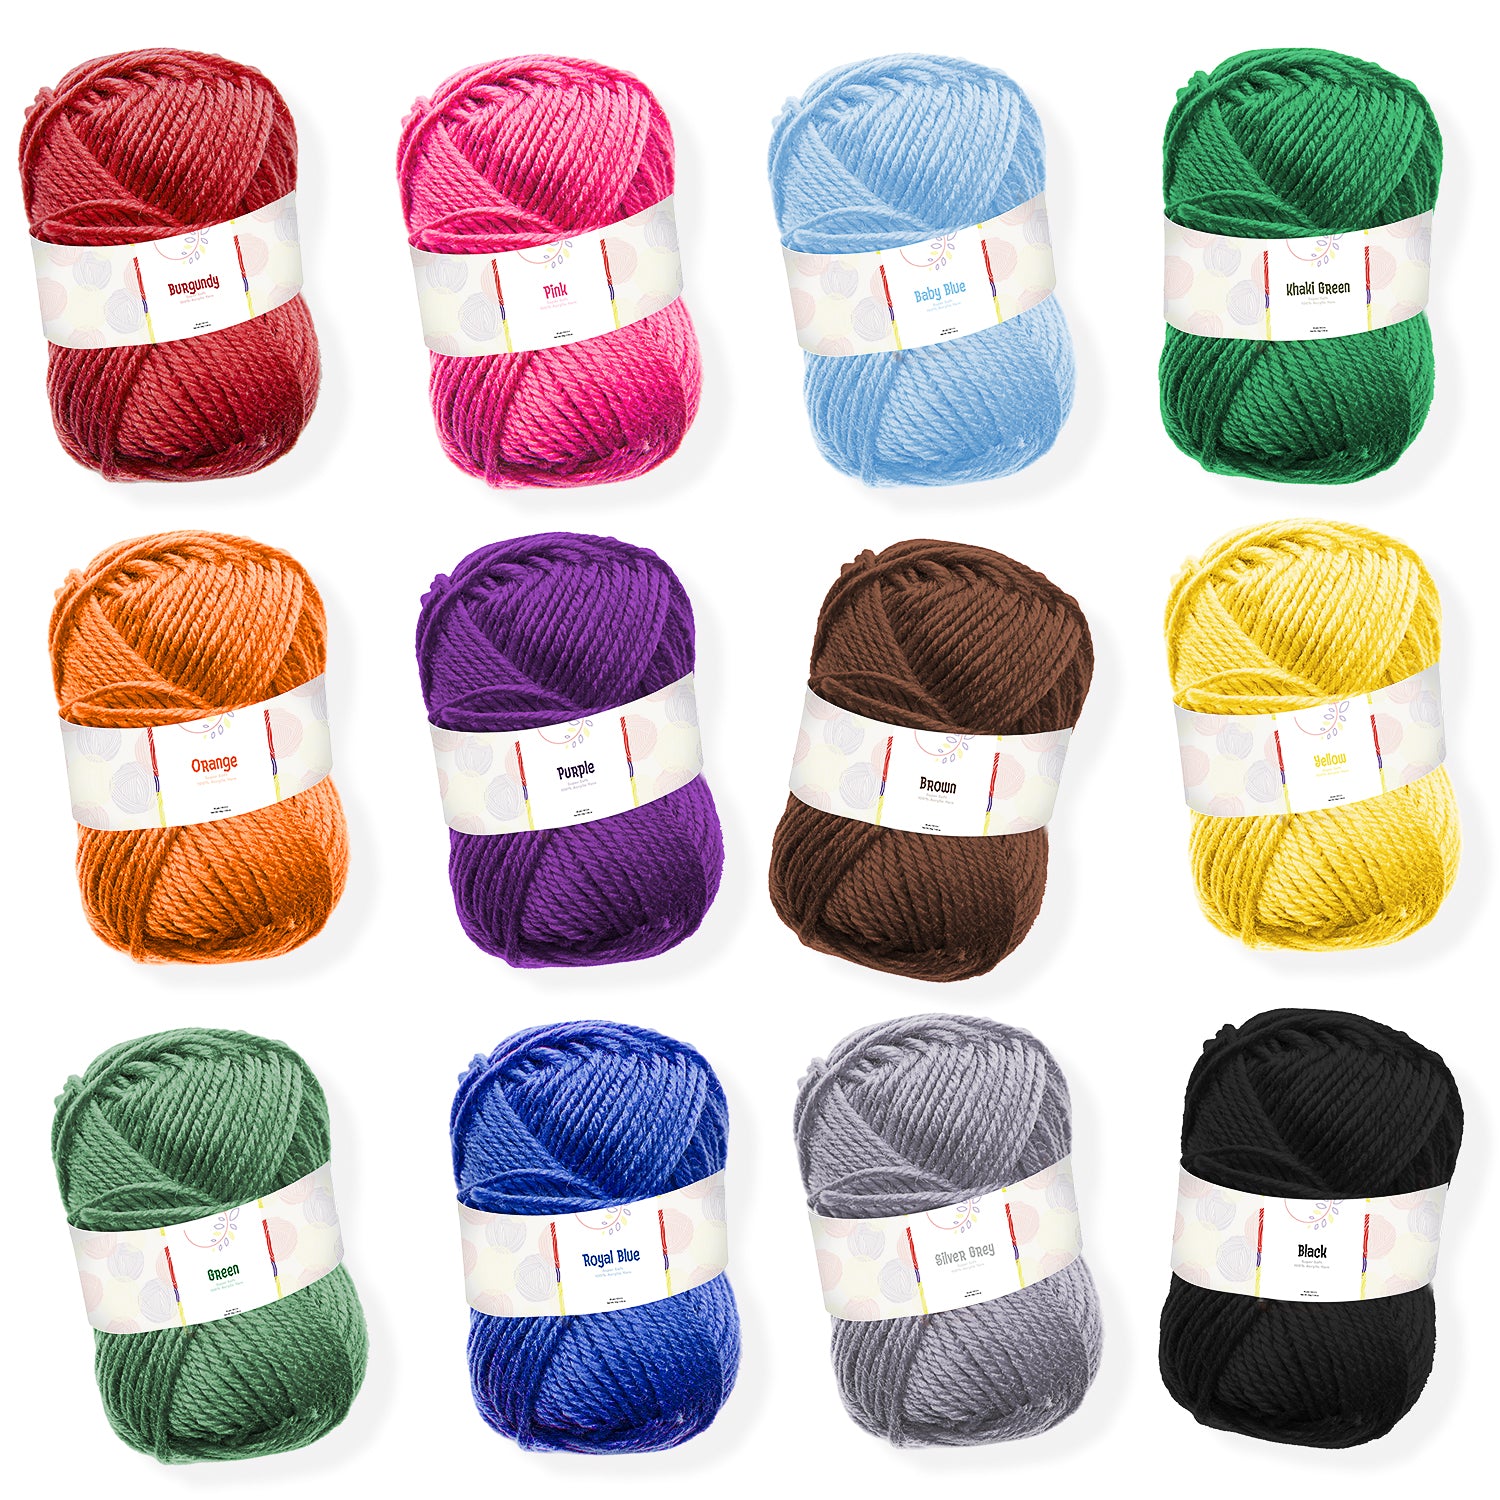  Soft Yarn for Crocheting - 2400 Yards Crochet Yarn for  Crocheting and Knitting Yarn, Amigurumi Yarn for Knitting, Acrylic Yarn  Bulk, Perfect Yarn for Crafts, Crocheting Yarn Set - 24 Yarn